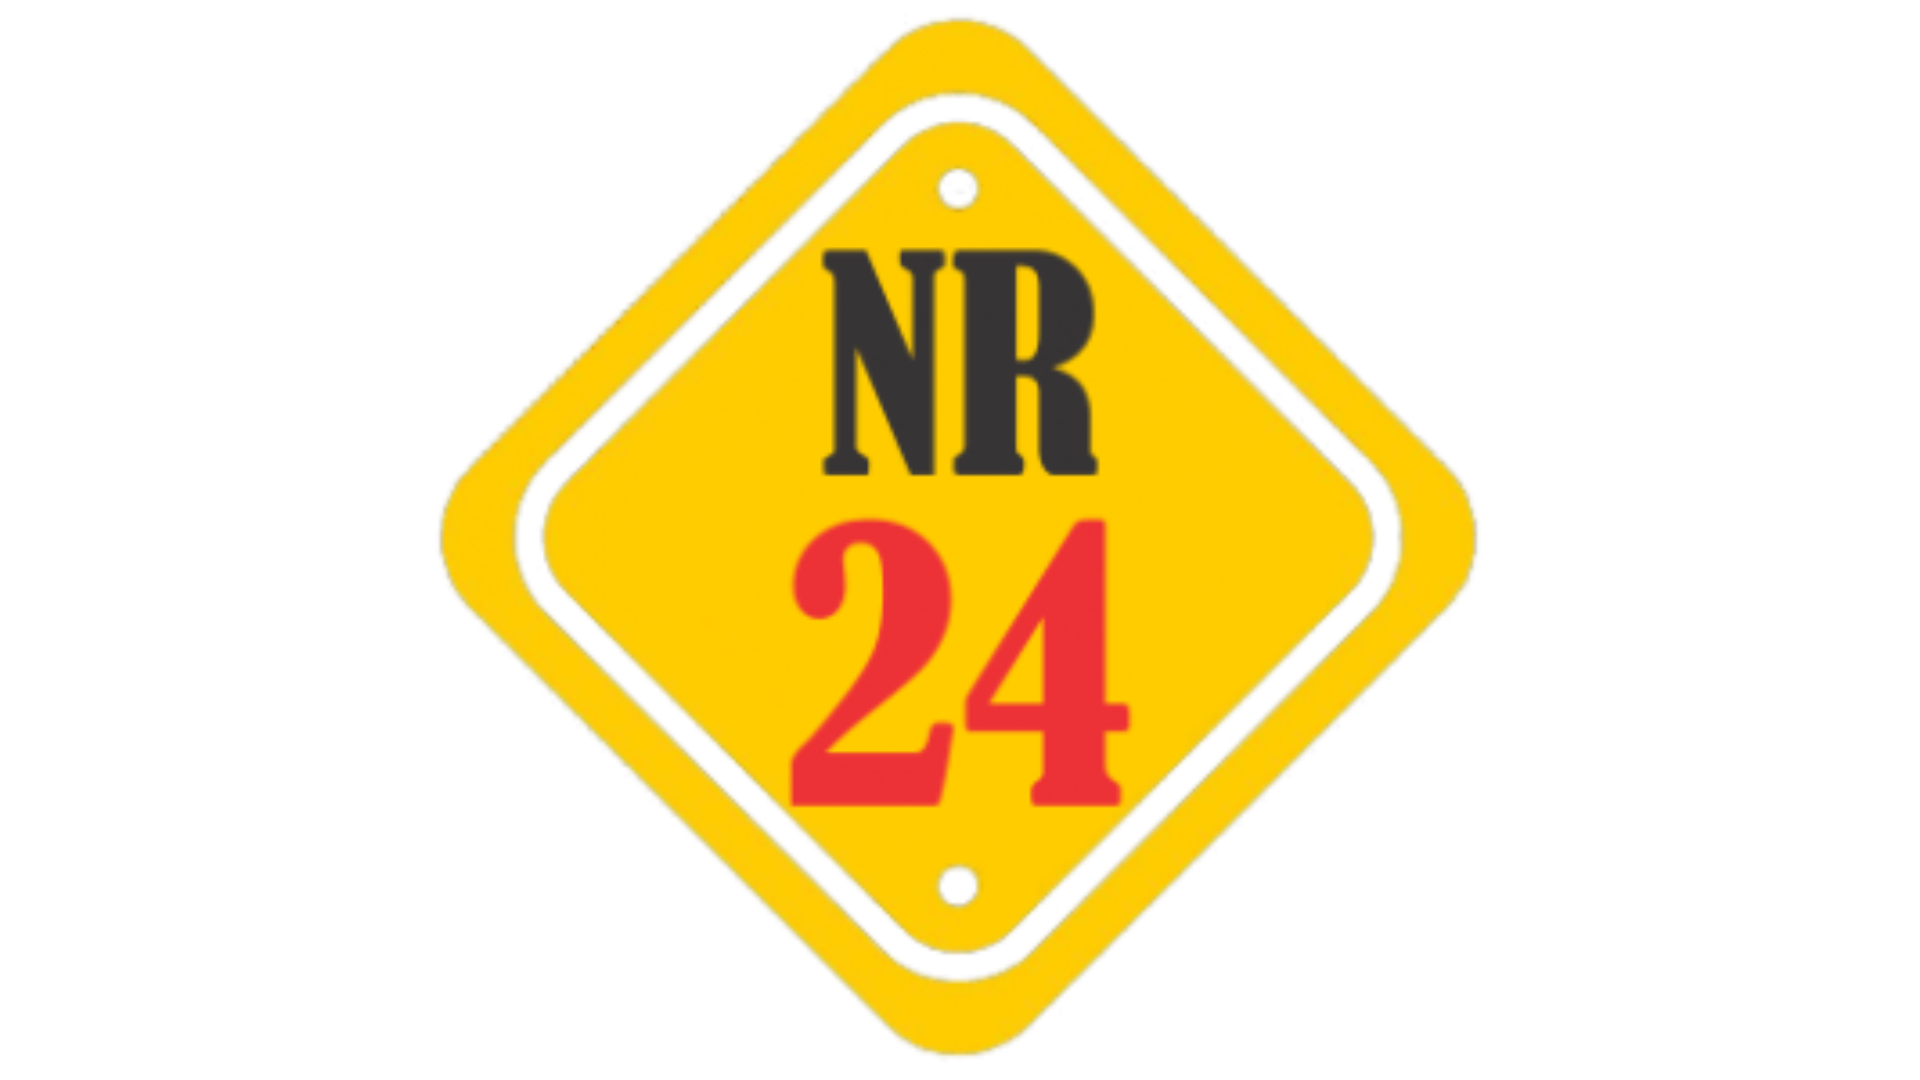 regras da NR24